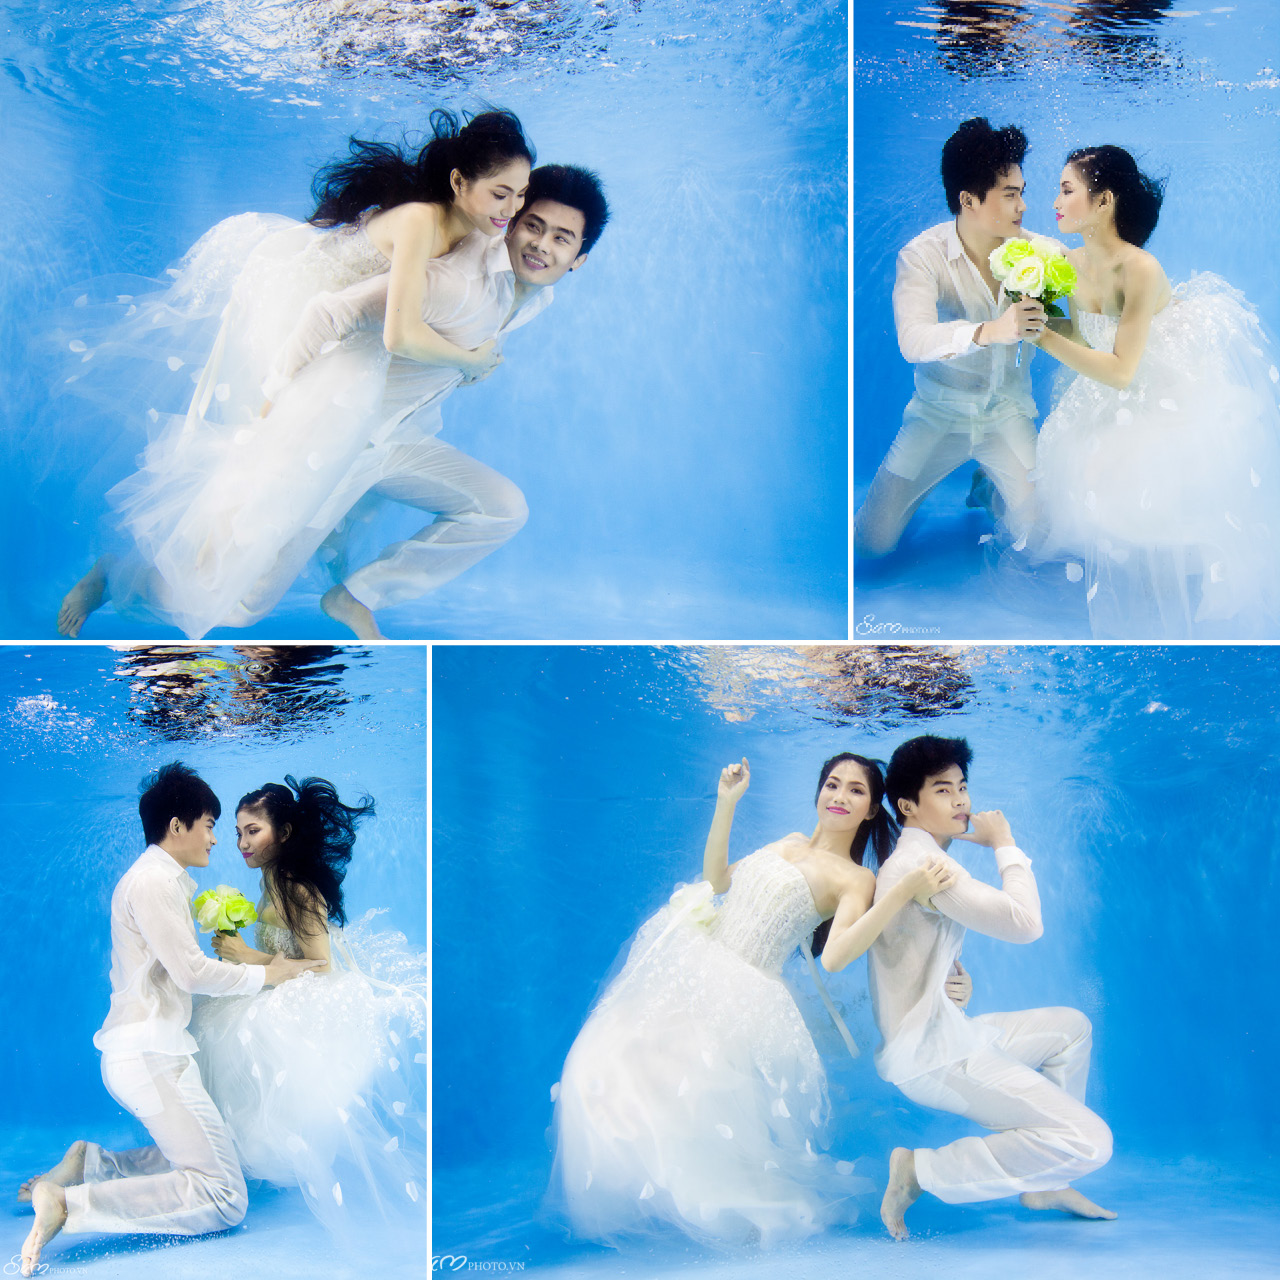 Xem bộ ảnh cưới dưới nước của samphoto